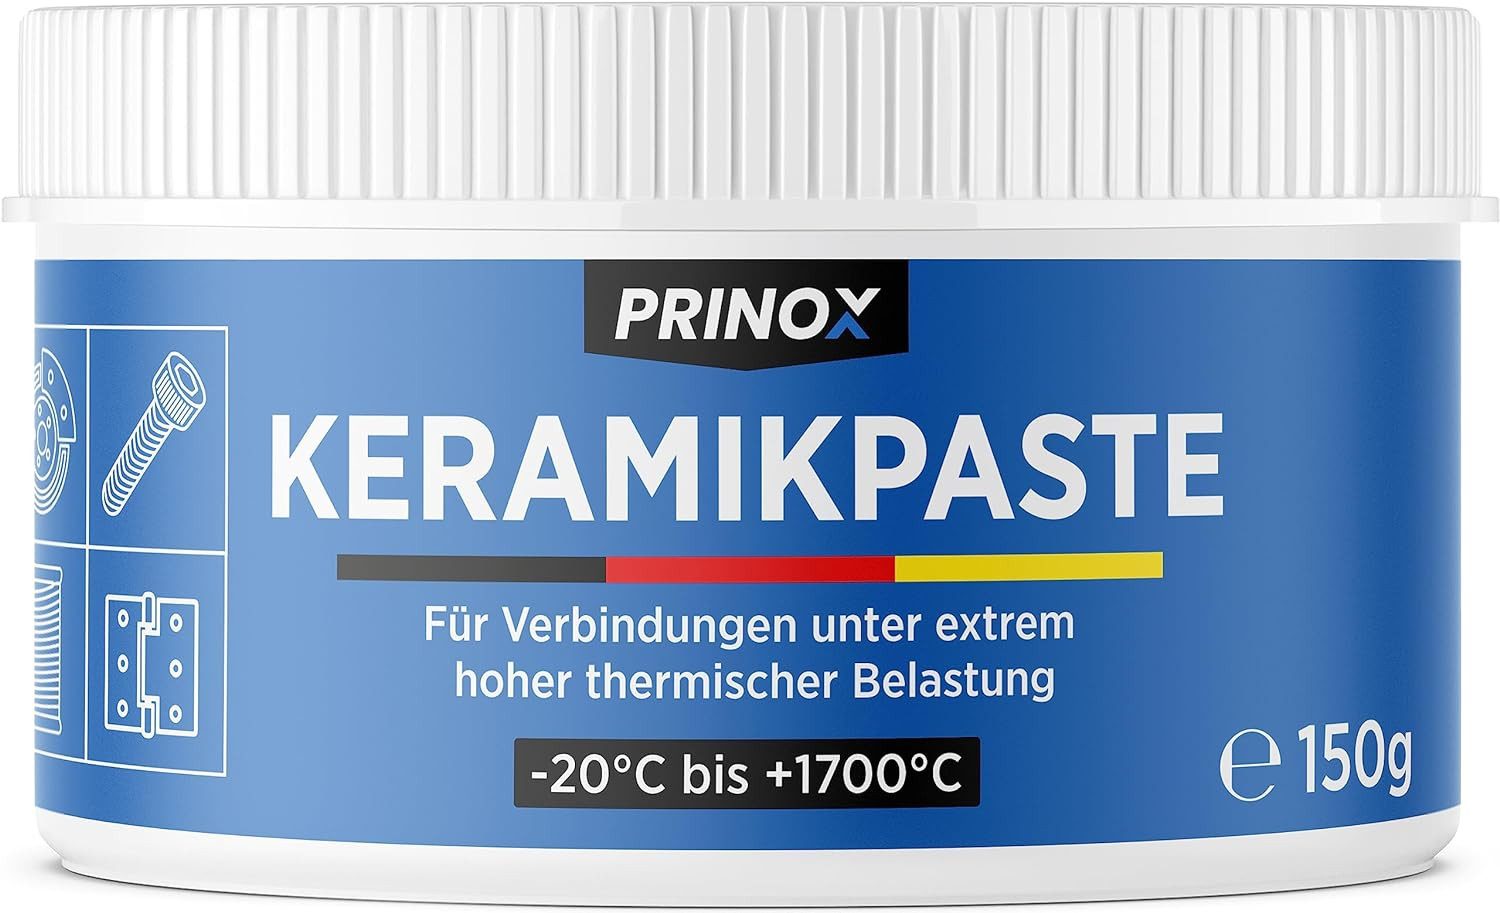 Prinox Keramikpaste 150g - Extrem Hitzebeständig +1700°C - Keramik Paste für KFZ Bremsen, 150 g, als Schmierpaste und Langzeitfett für Schrauben, Bremspaste